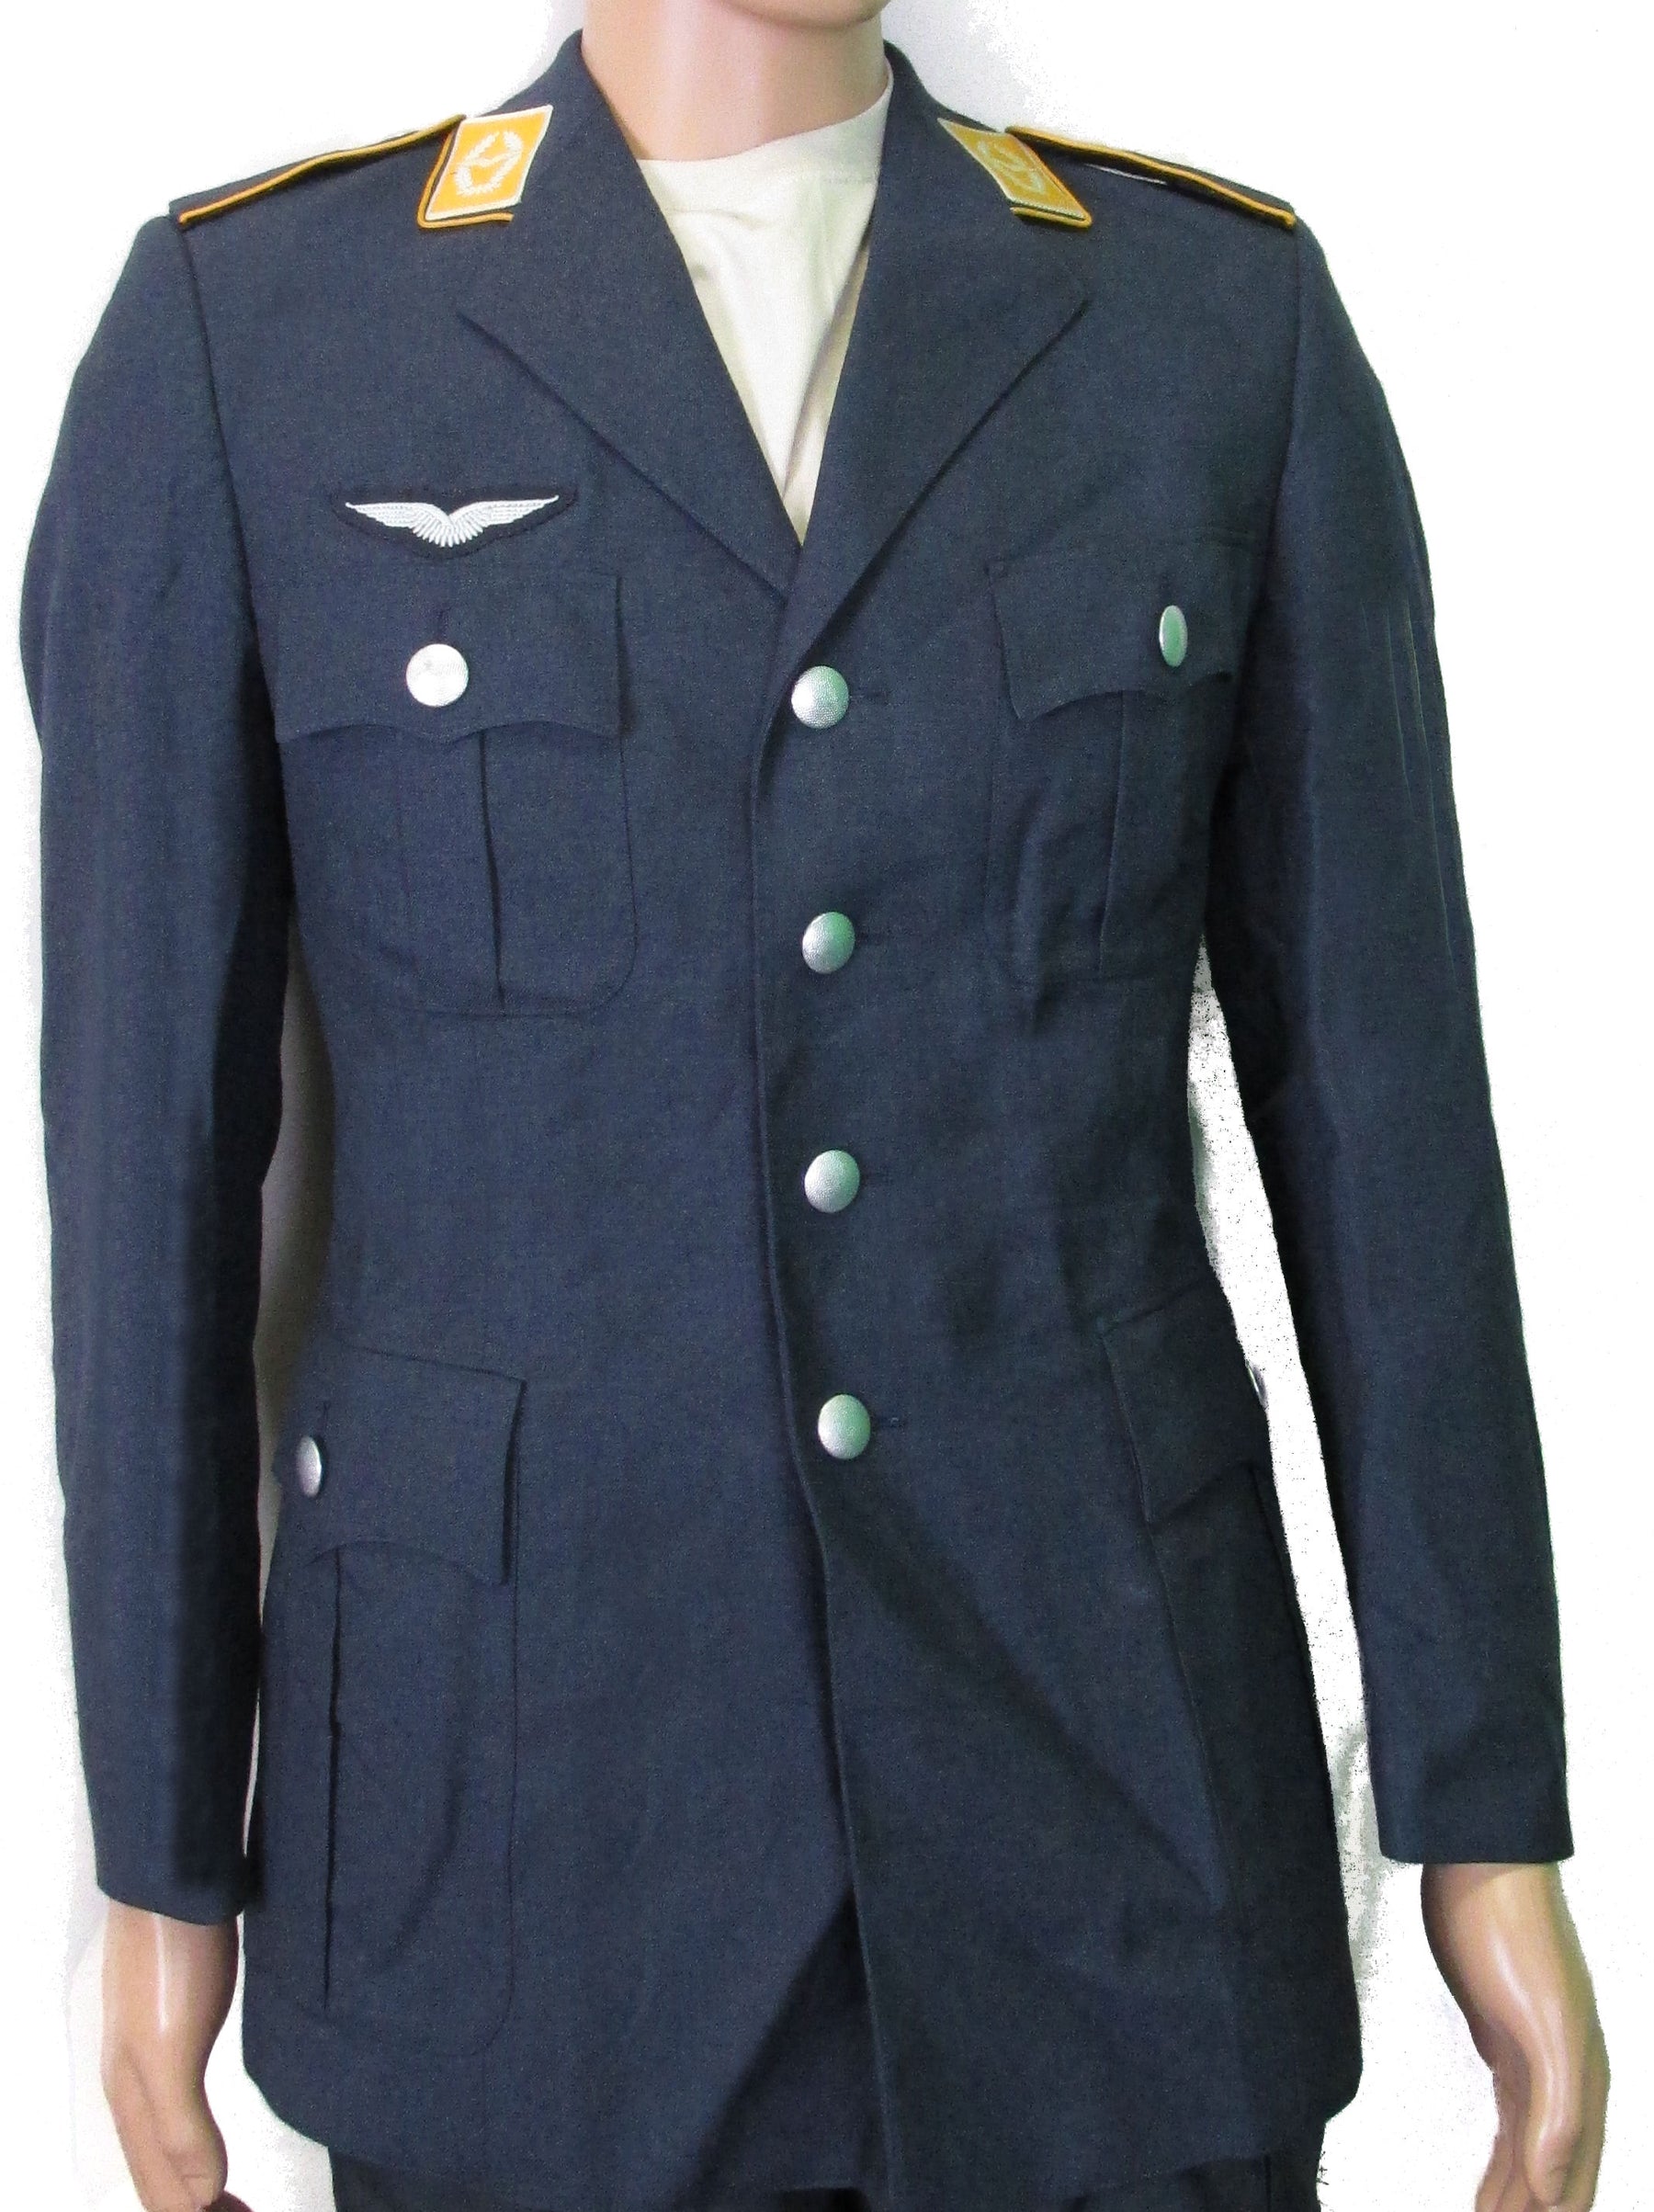 German Military Surplus Air Force Dress Jacket